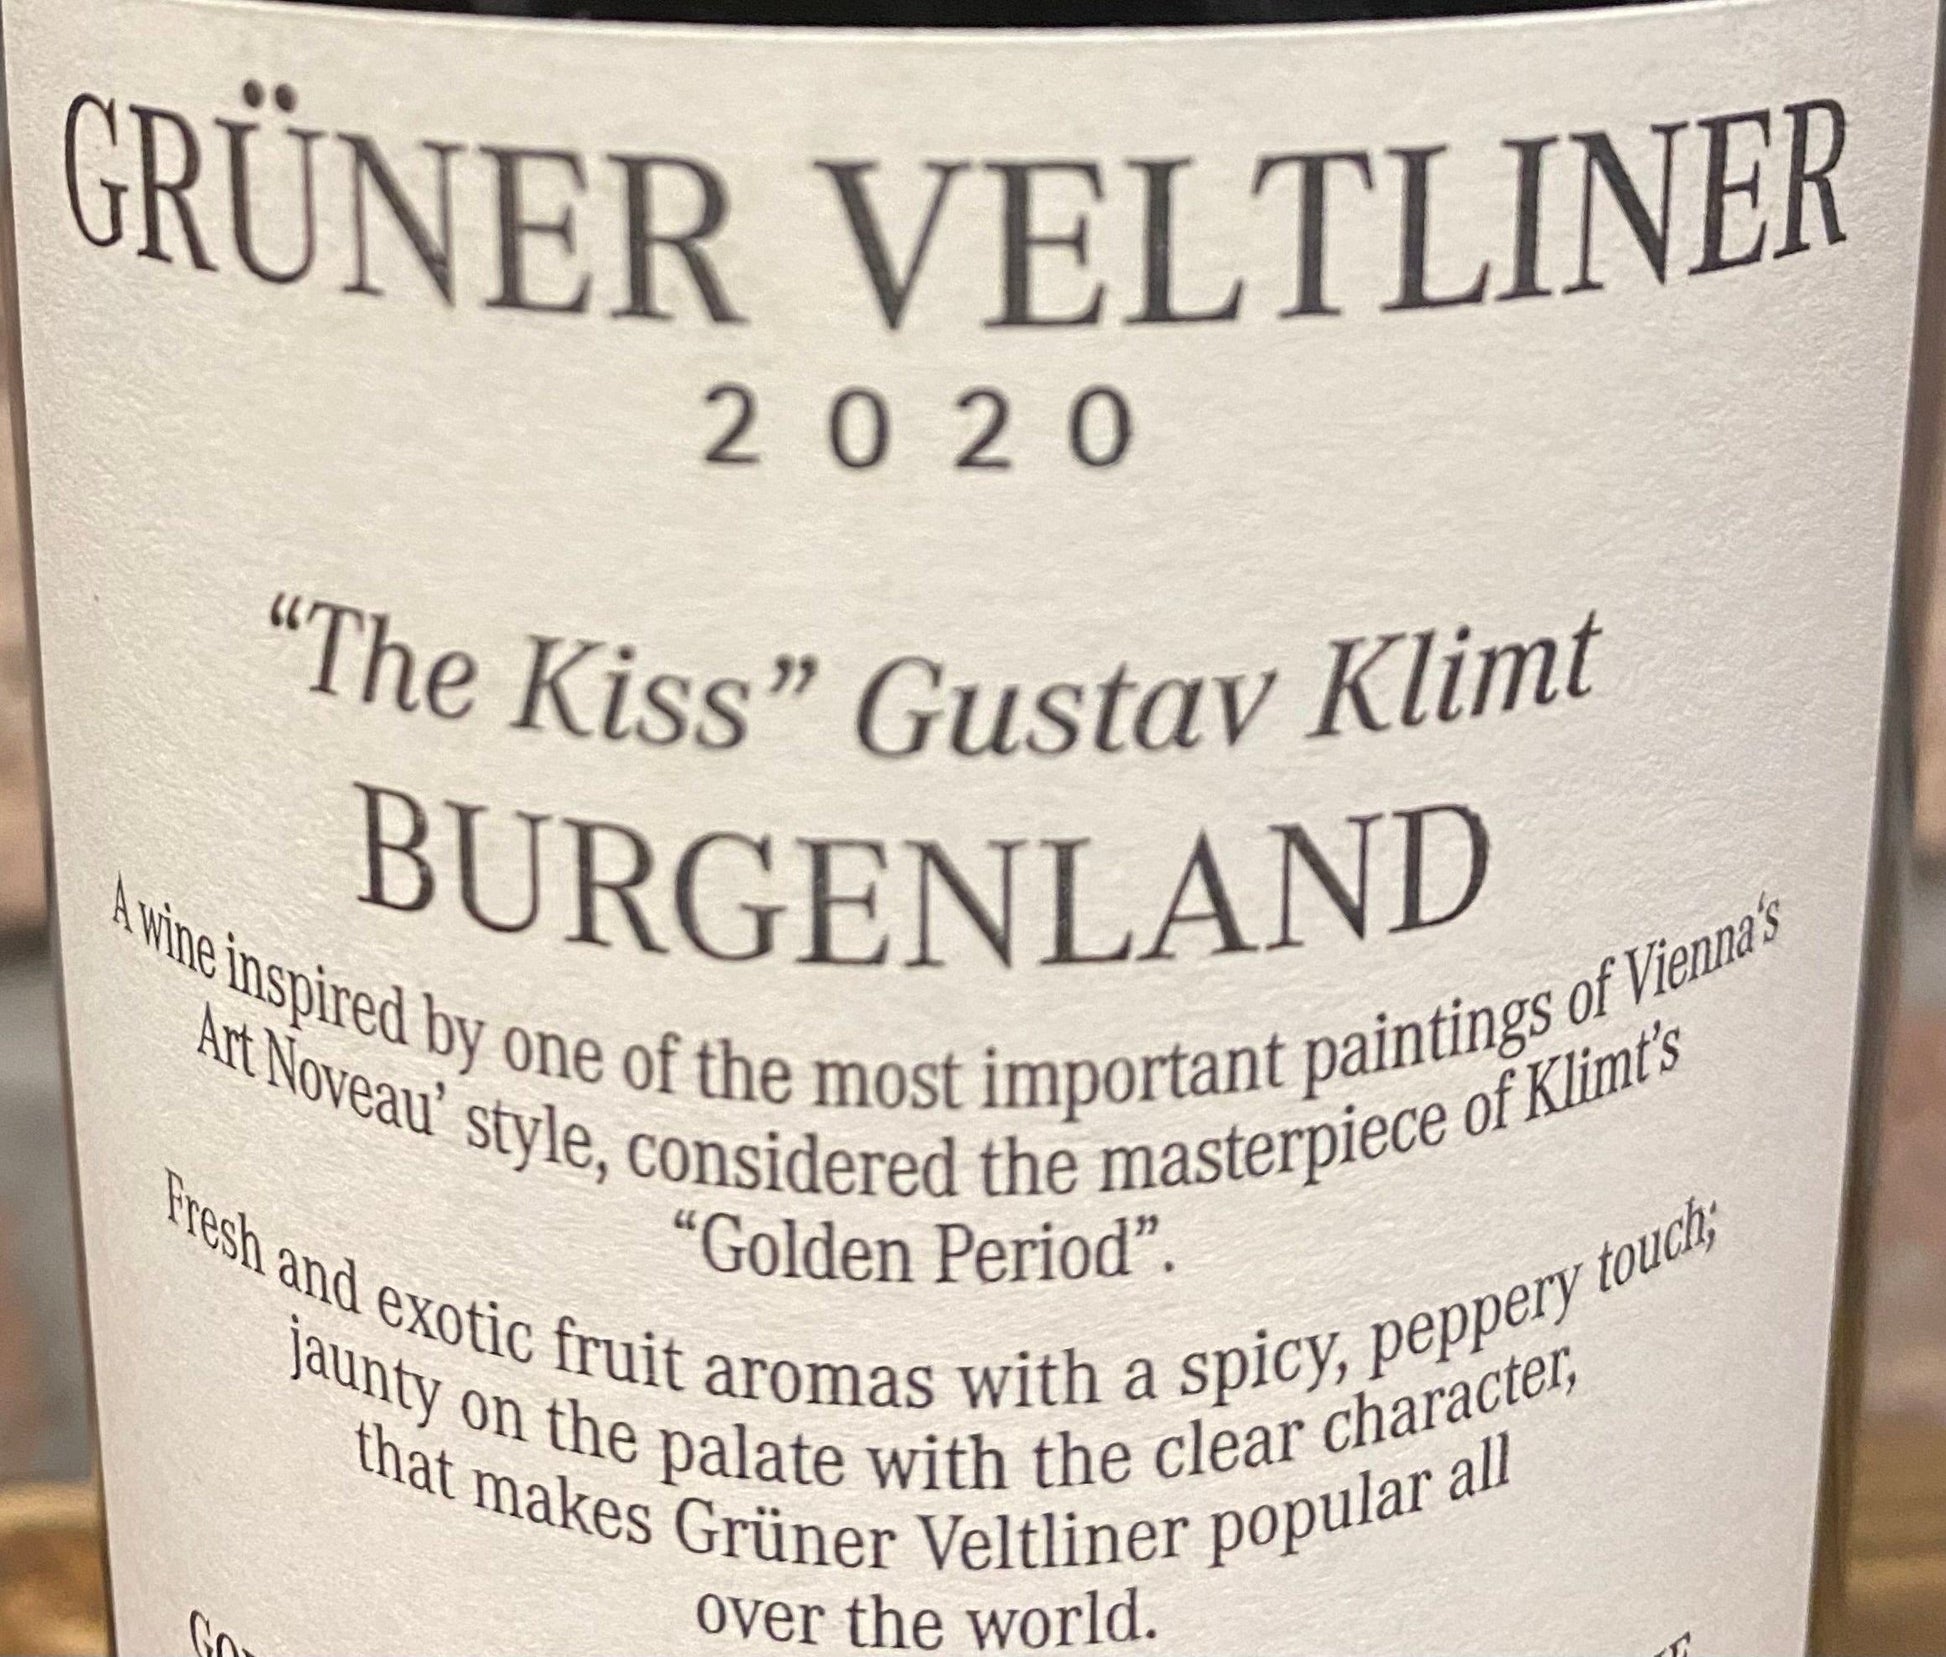 Klimt “The Kiss” Gruner Veltliner - Your Wine Stop   -   Denver, NC